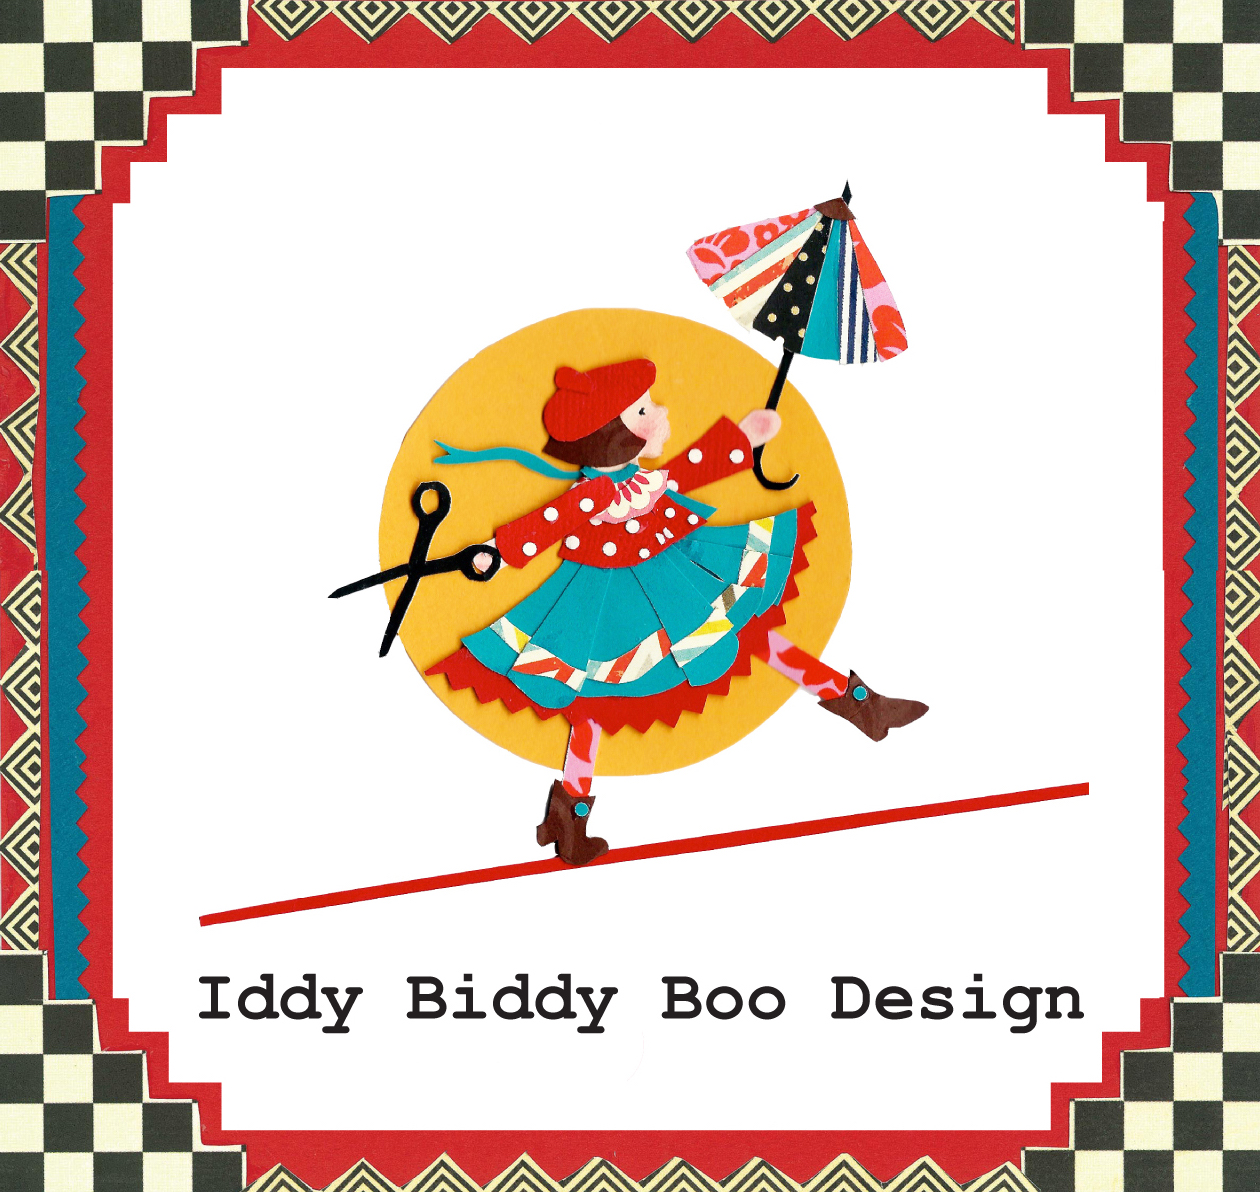 Iddy Biddy Boo Design